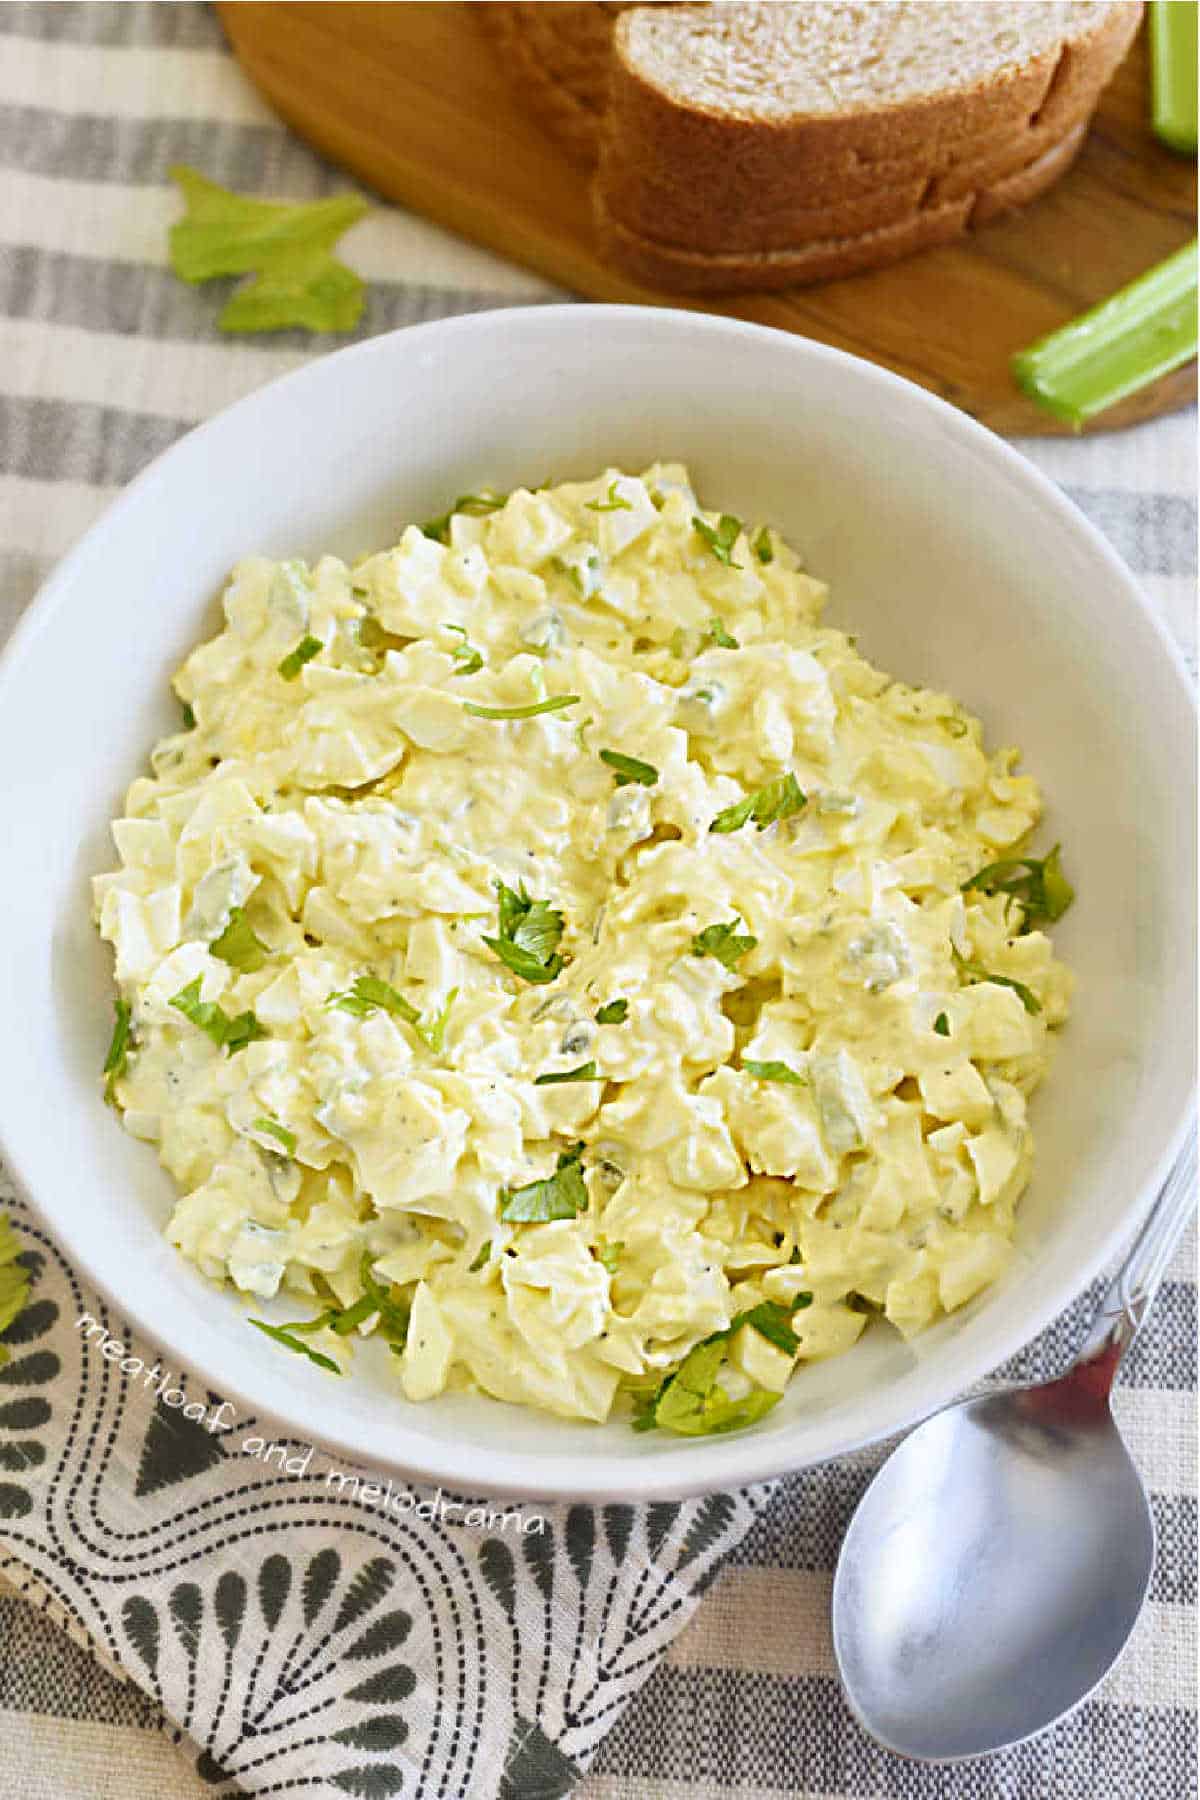 bowl of egg salad garnished with celery leaves.